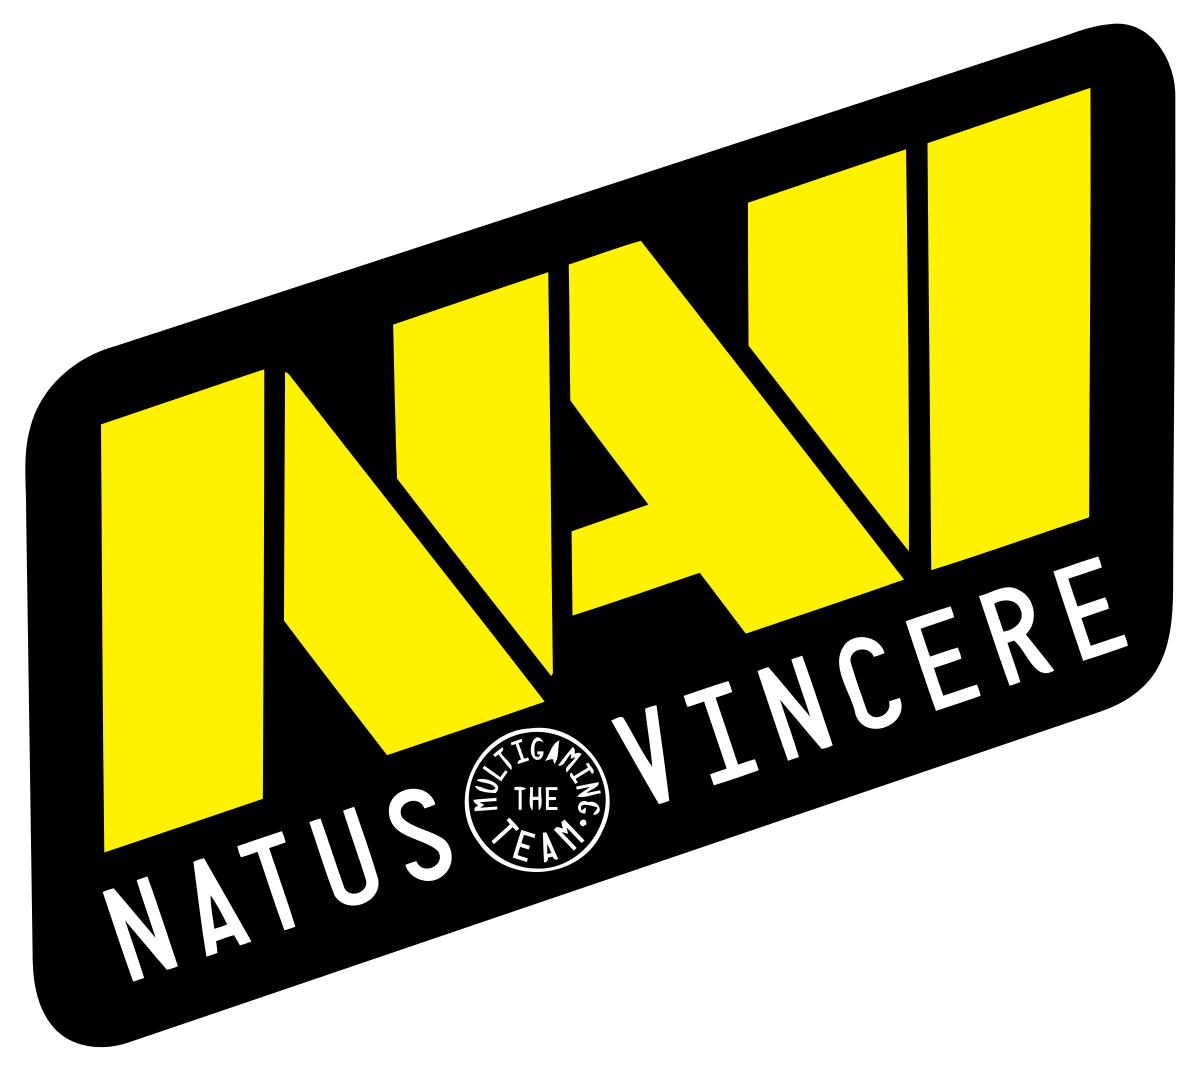 Natus Vincere в 2021 году заработала на турнирах более четырёх миллионов долларов